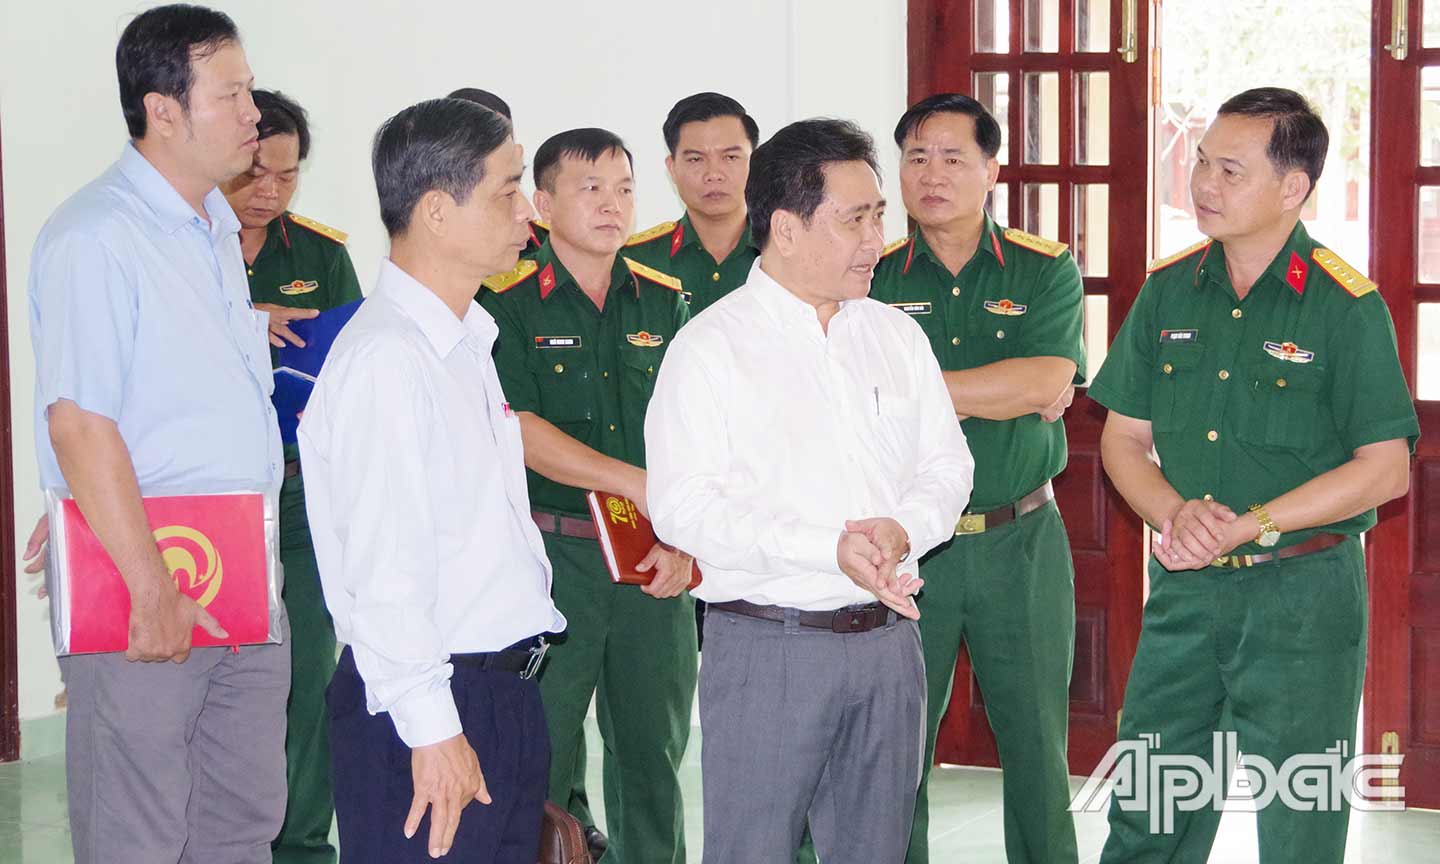 Đồng chí Trần Văn Dũng, Tỉnh ủy viên, Phó Chủ tịch UBND tỉnh kiểm tra cơ sở vật chất, trước khi đón công dân vào khu cách ly tập trung.